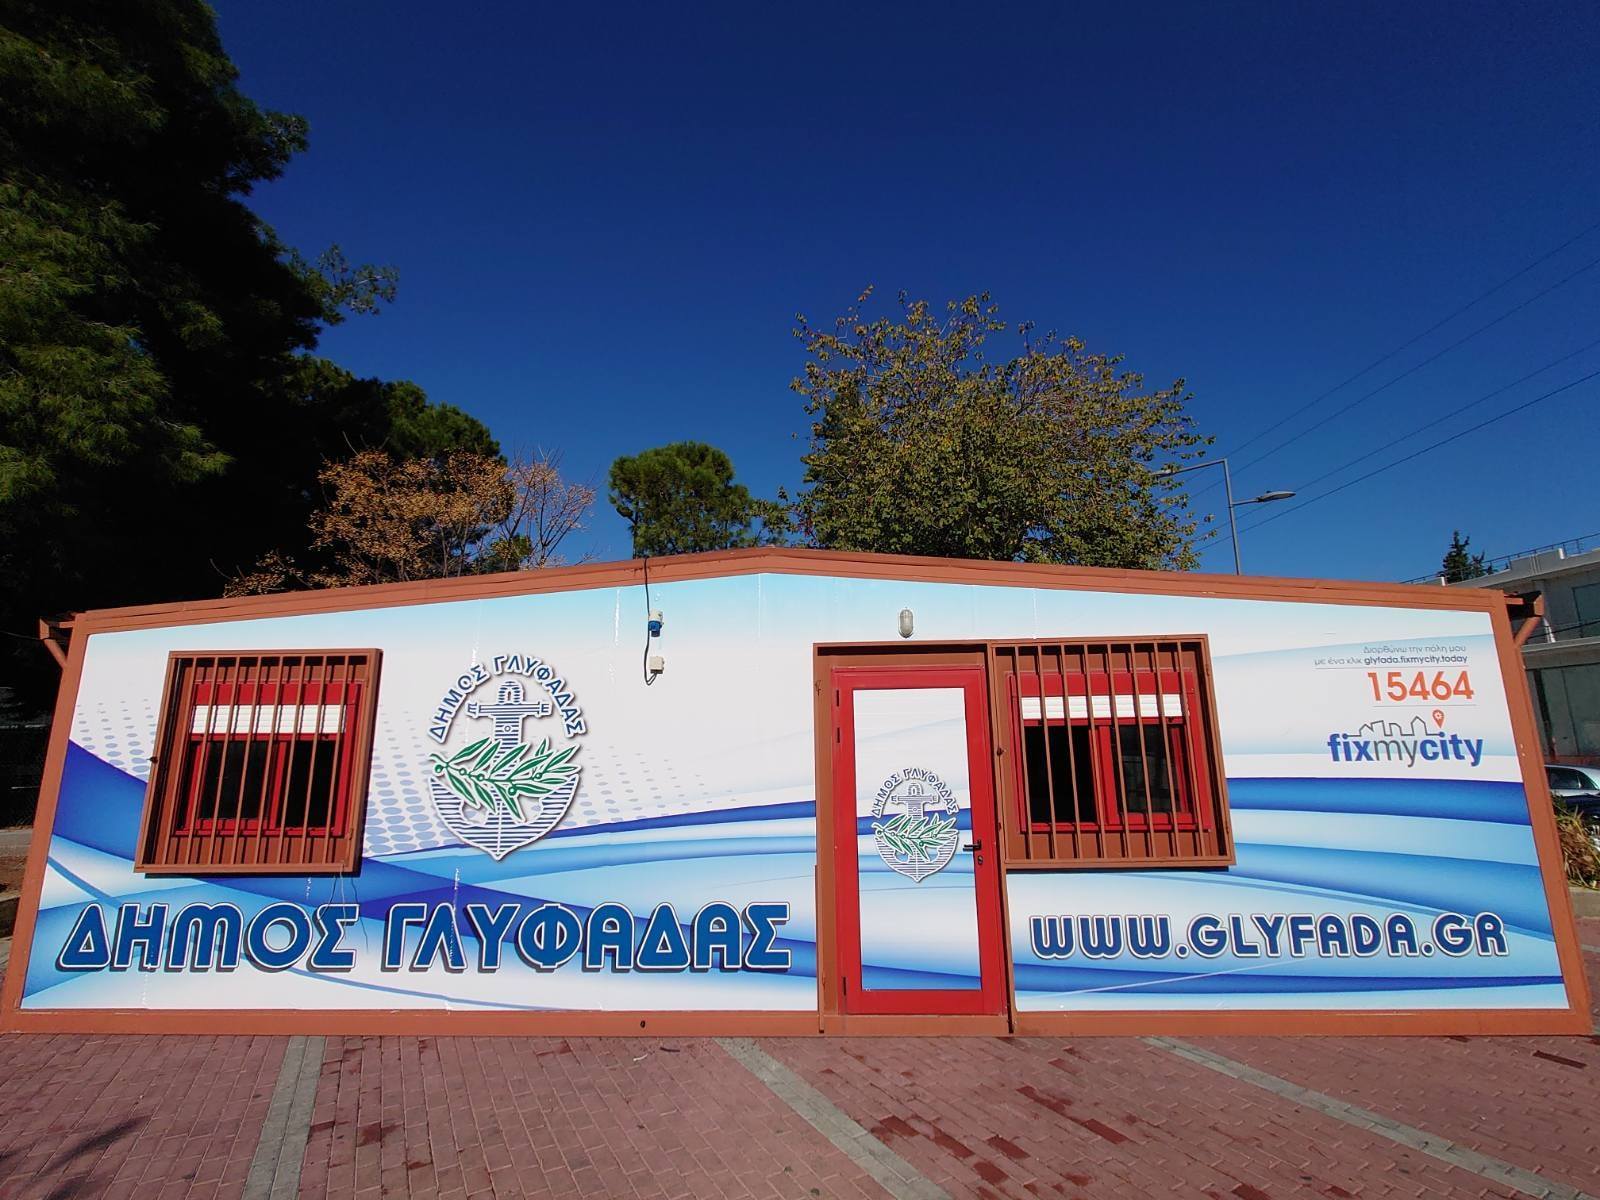 Δωρεάν rapid tests καθημερινά στο δήμο Γλυφάδας